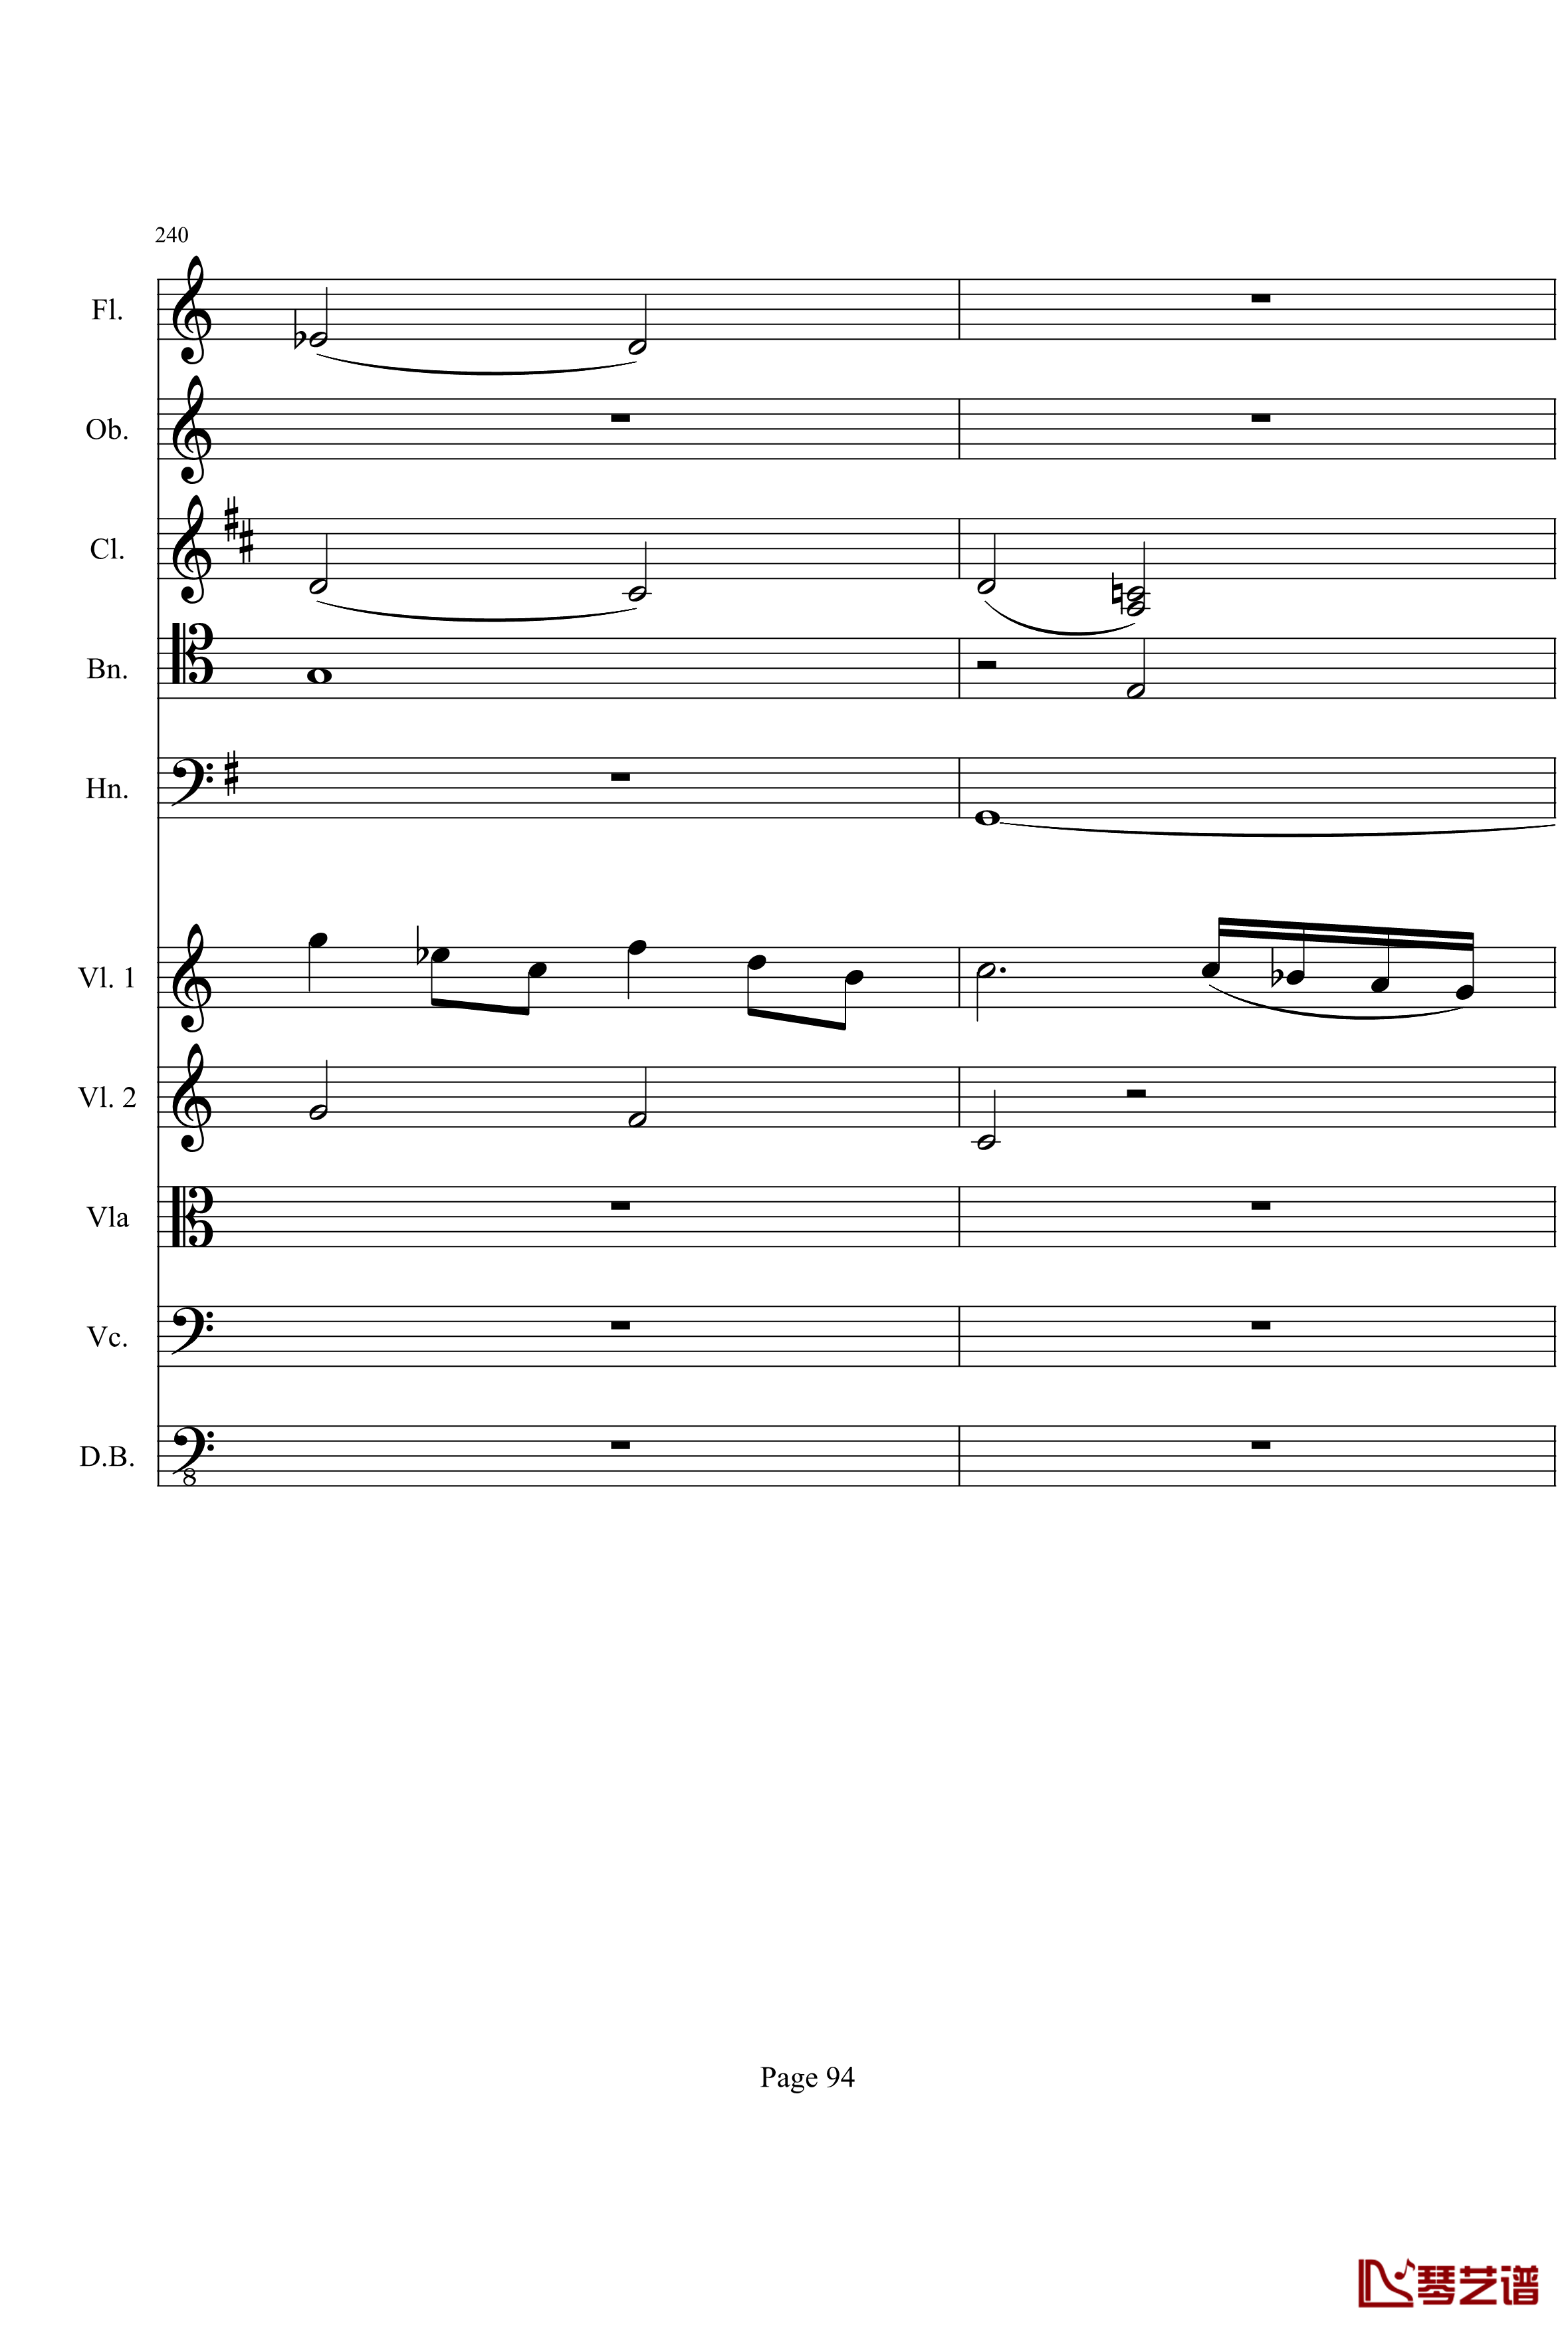 奏鸣曲之交响钢琴谱-第21-Ⅰ-贝多芬-beethoven94